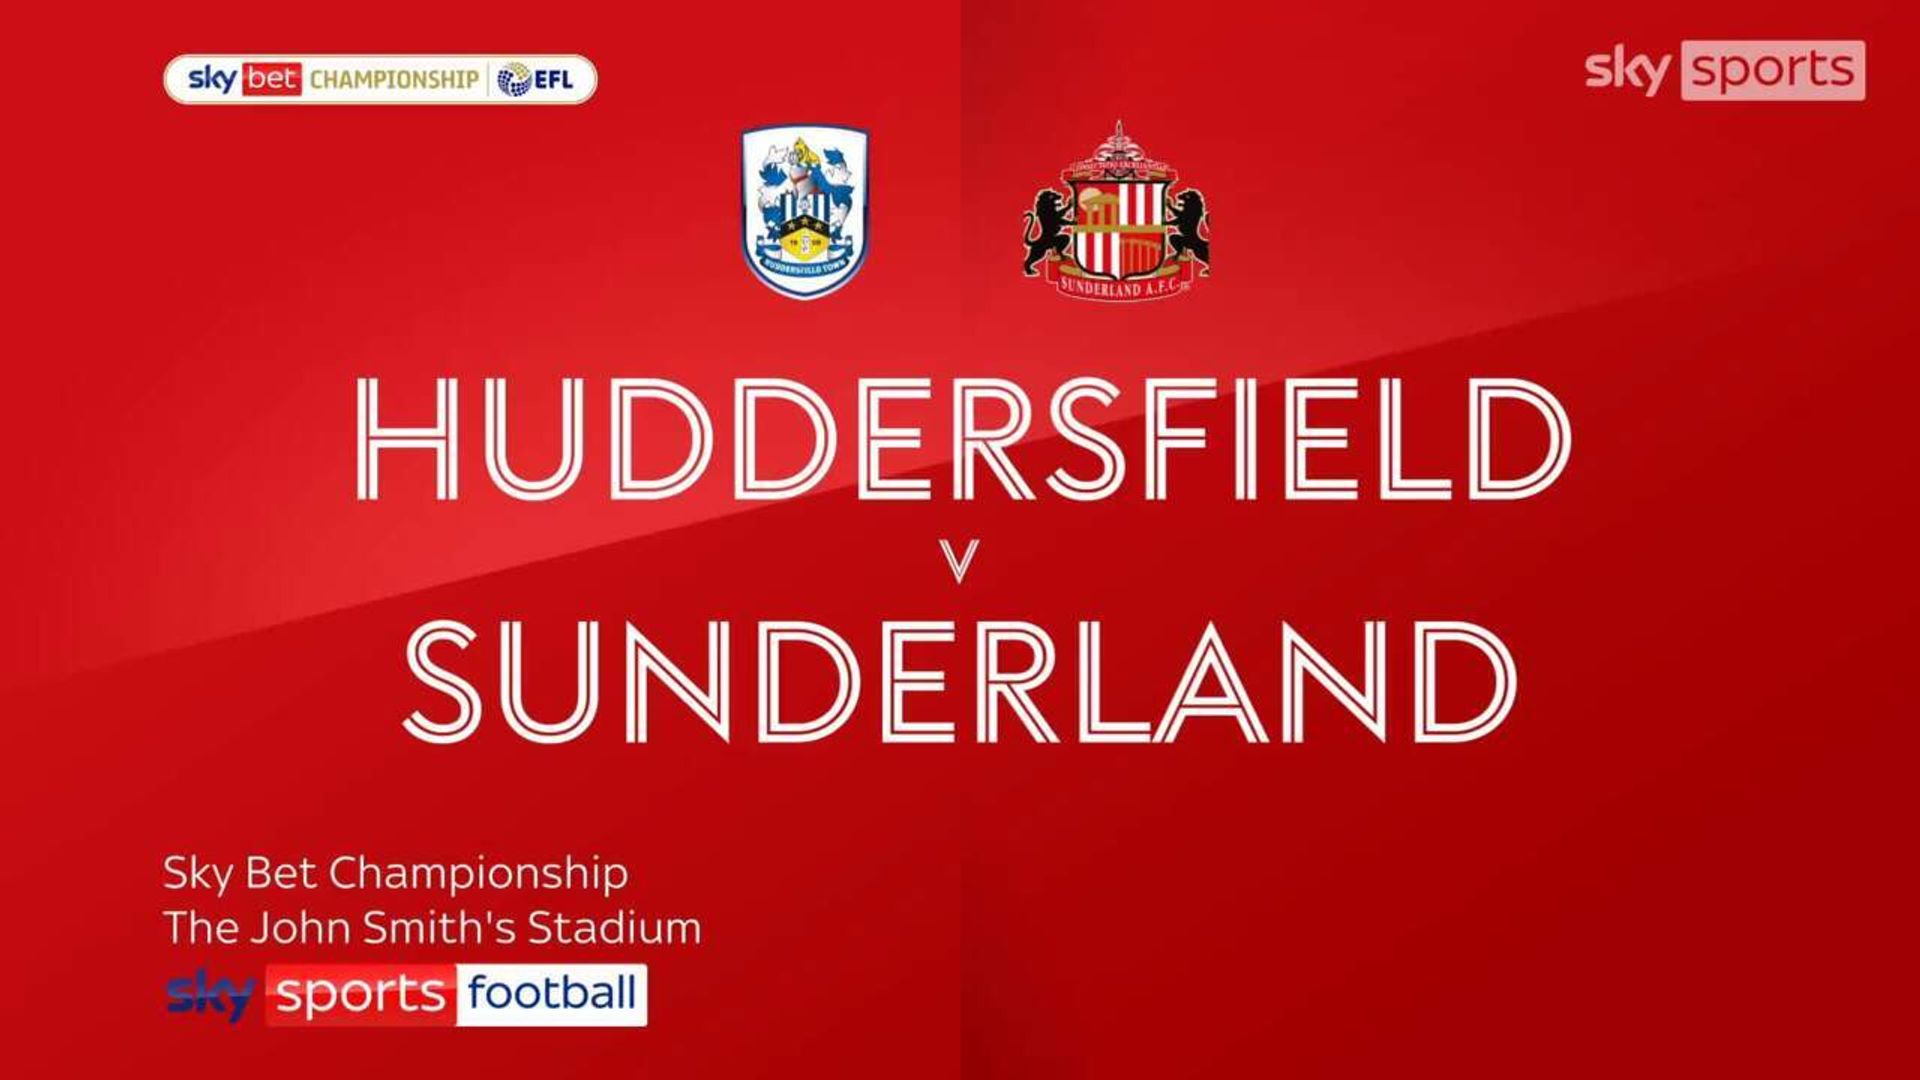 Huddersfield 1-0 Sunderland